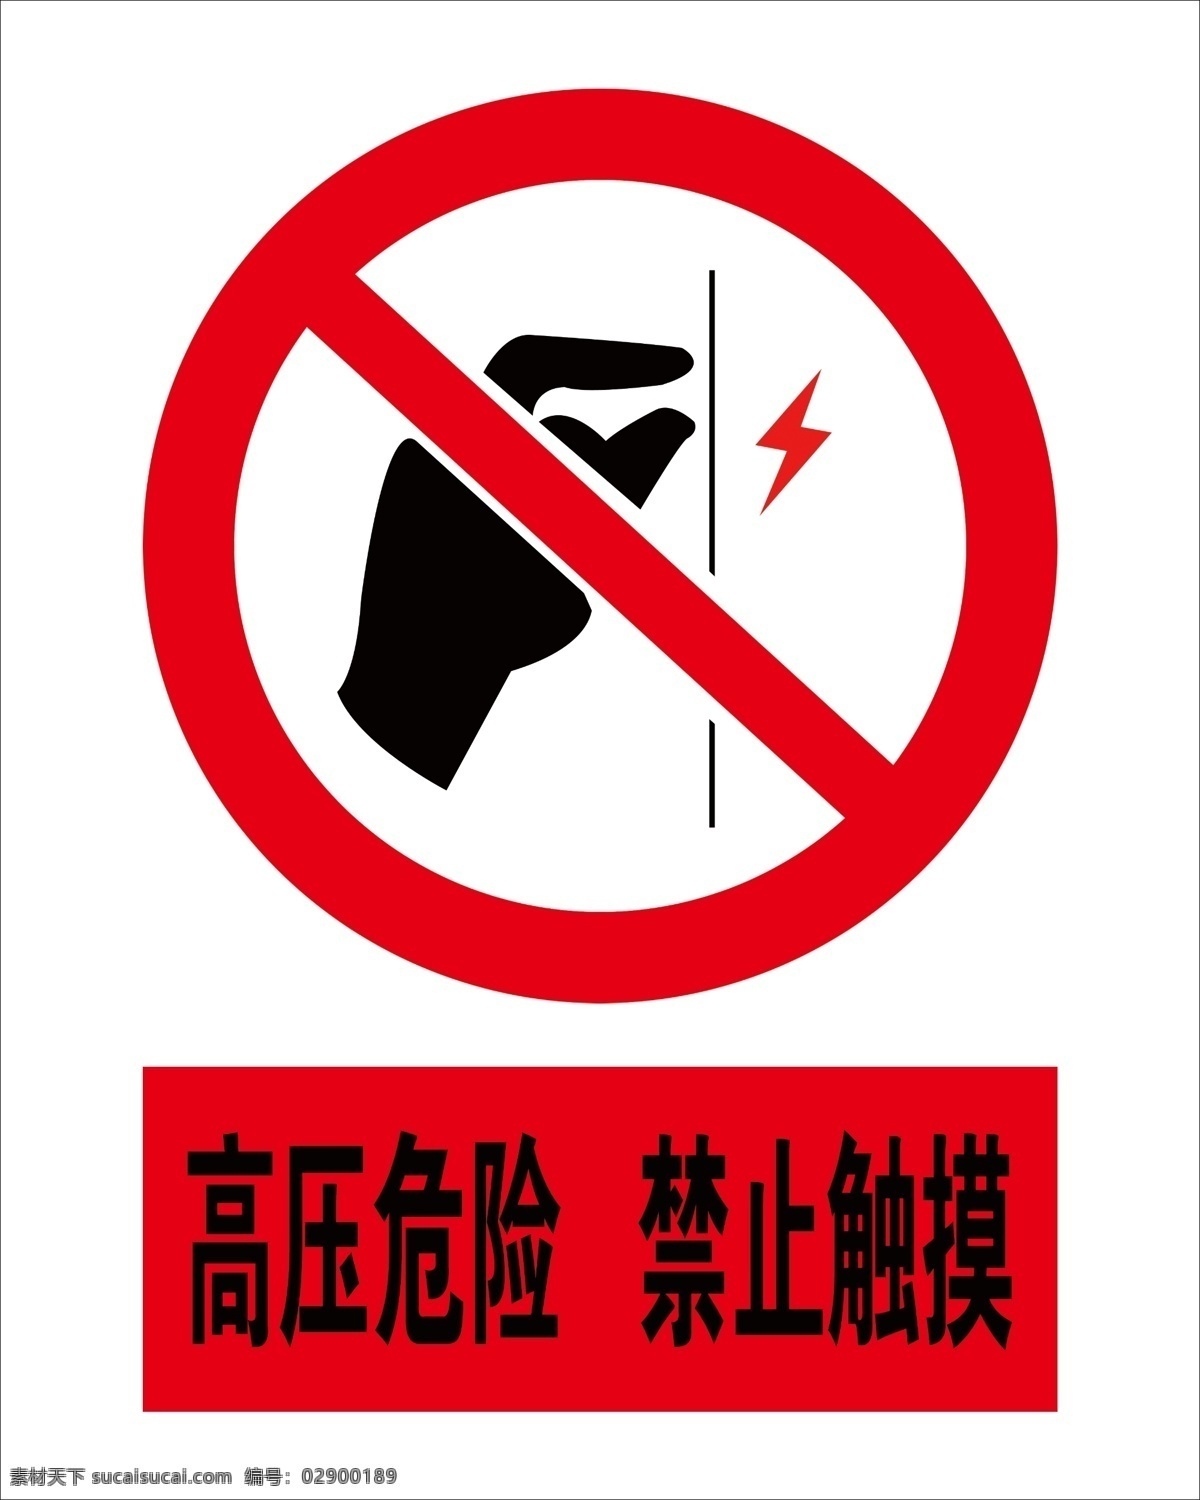 禁止触摸 手 触摸 高压危险 闪电 电力标志 安全标志 分层